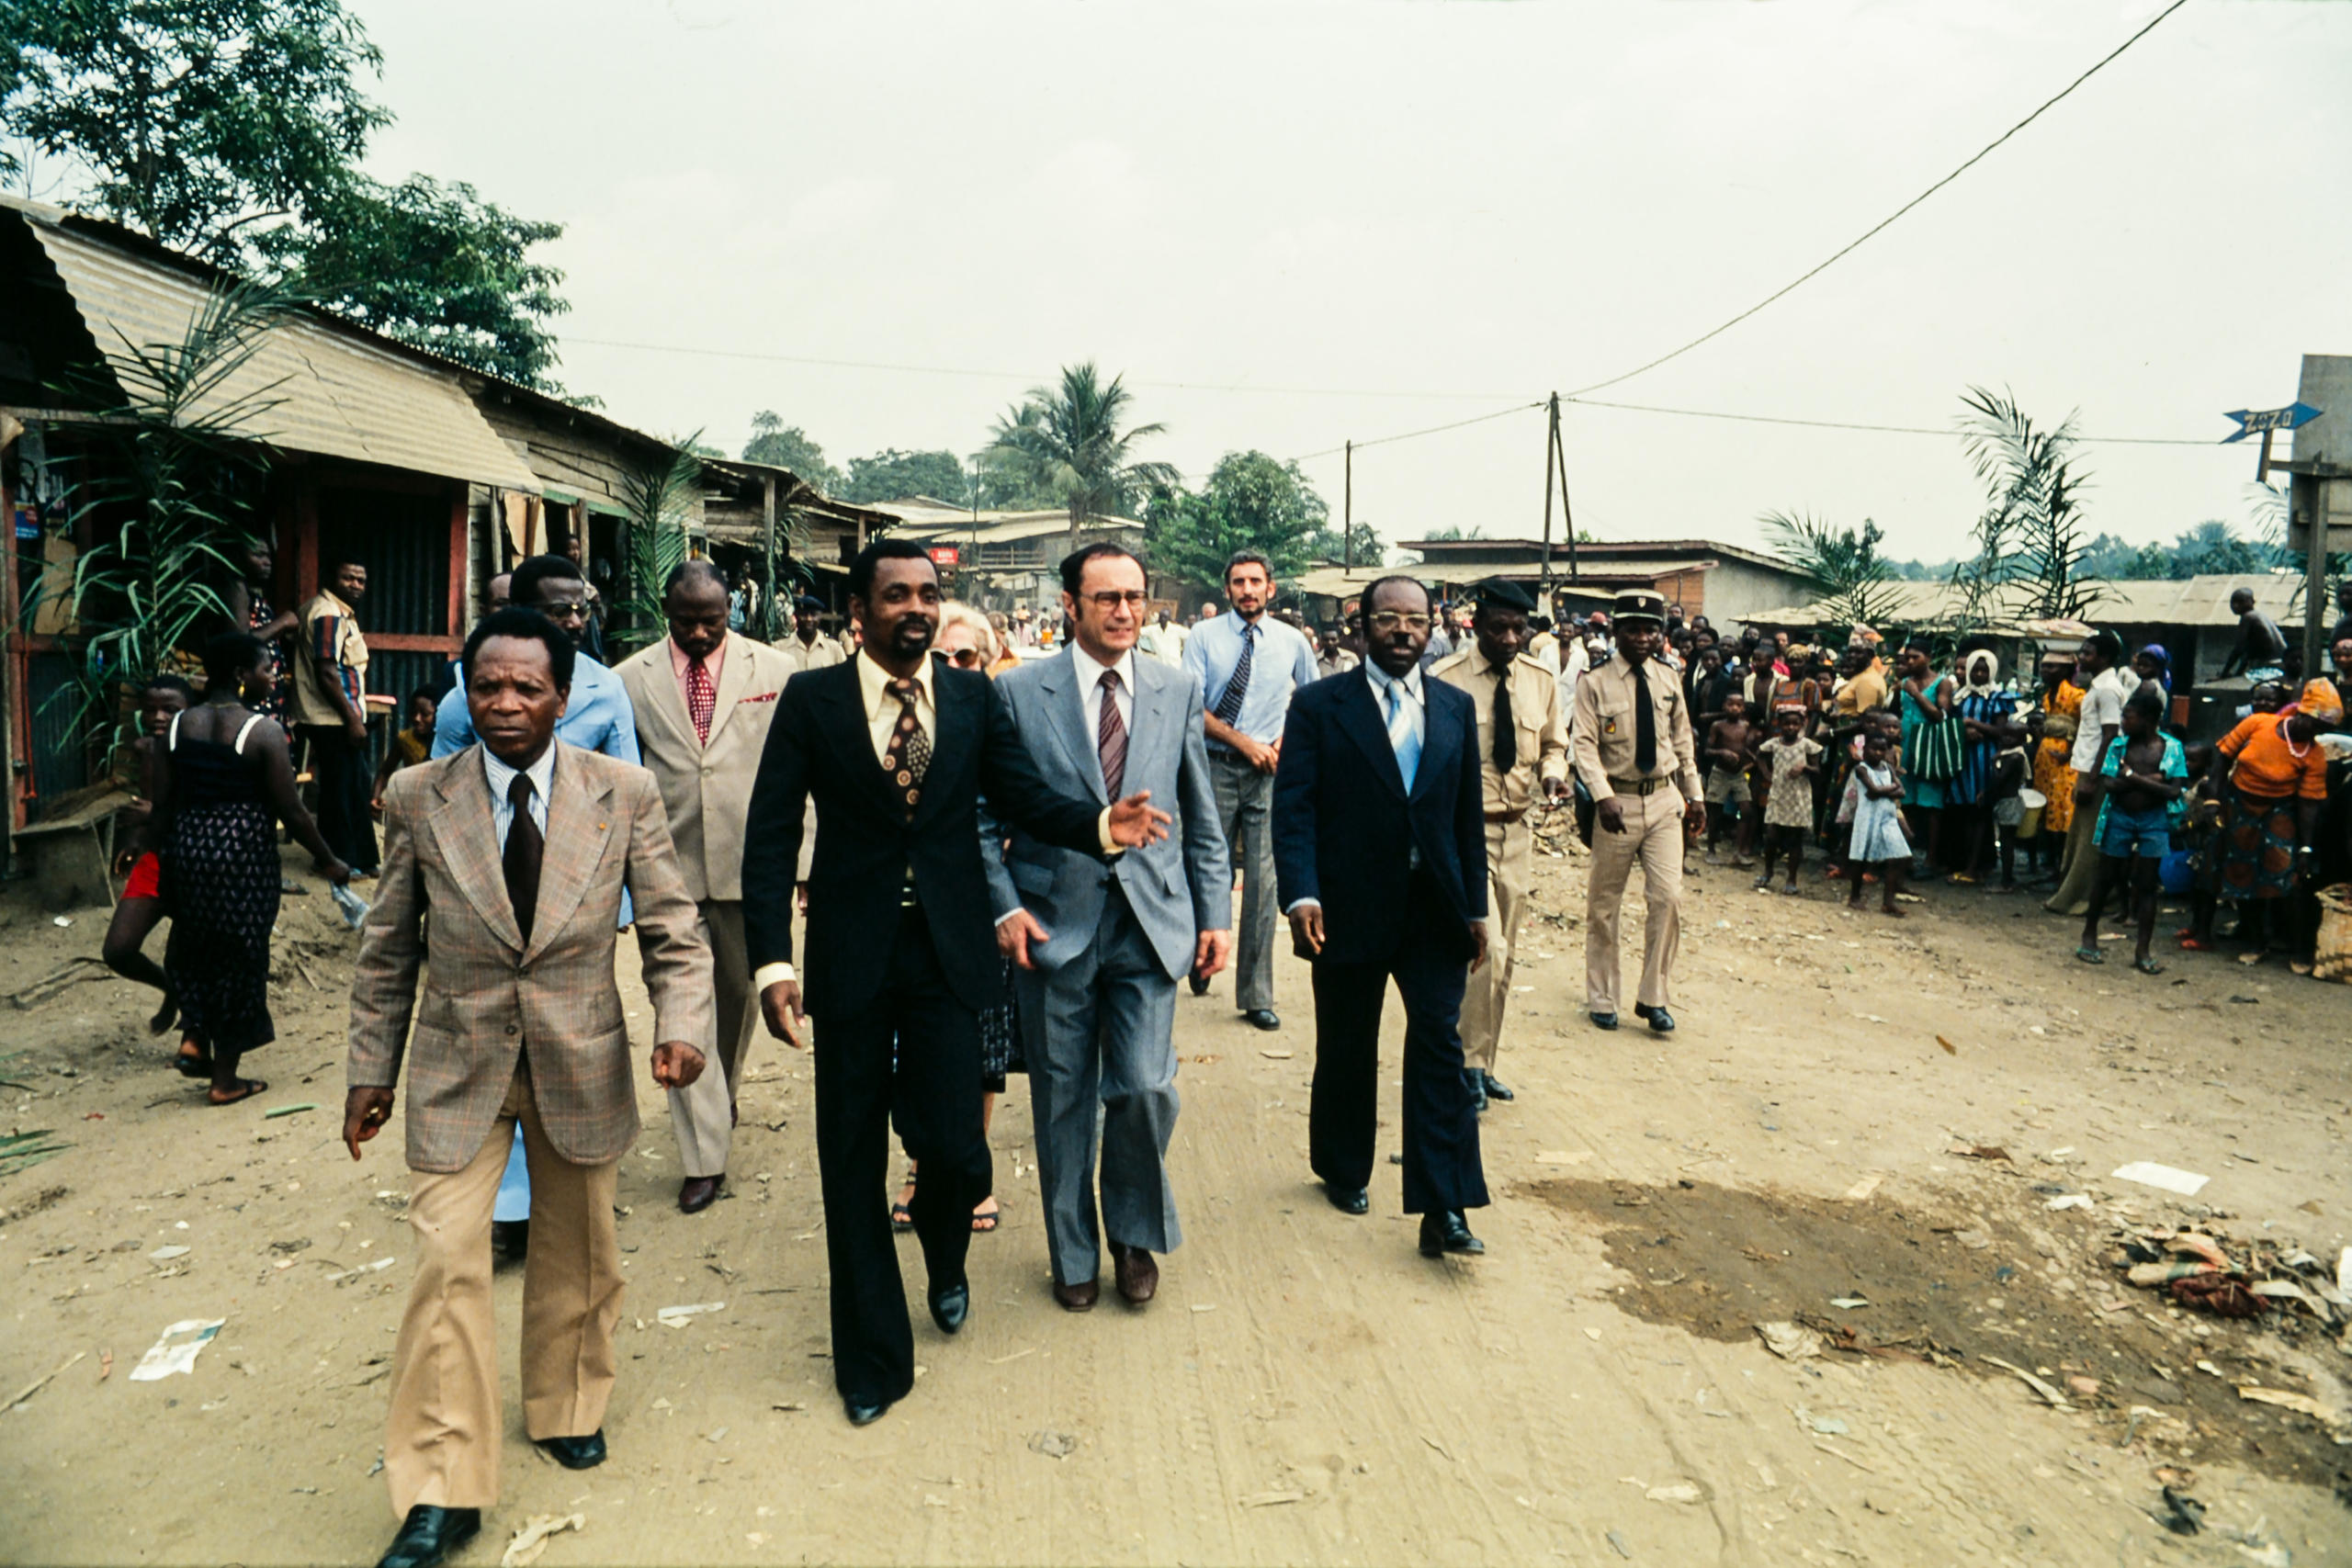 مجموعة من الرجال في شارع بمدينة افريقية